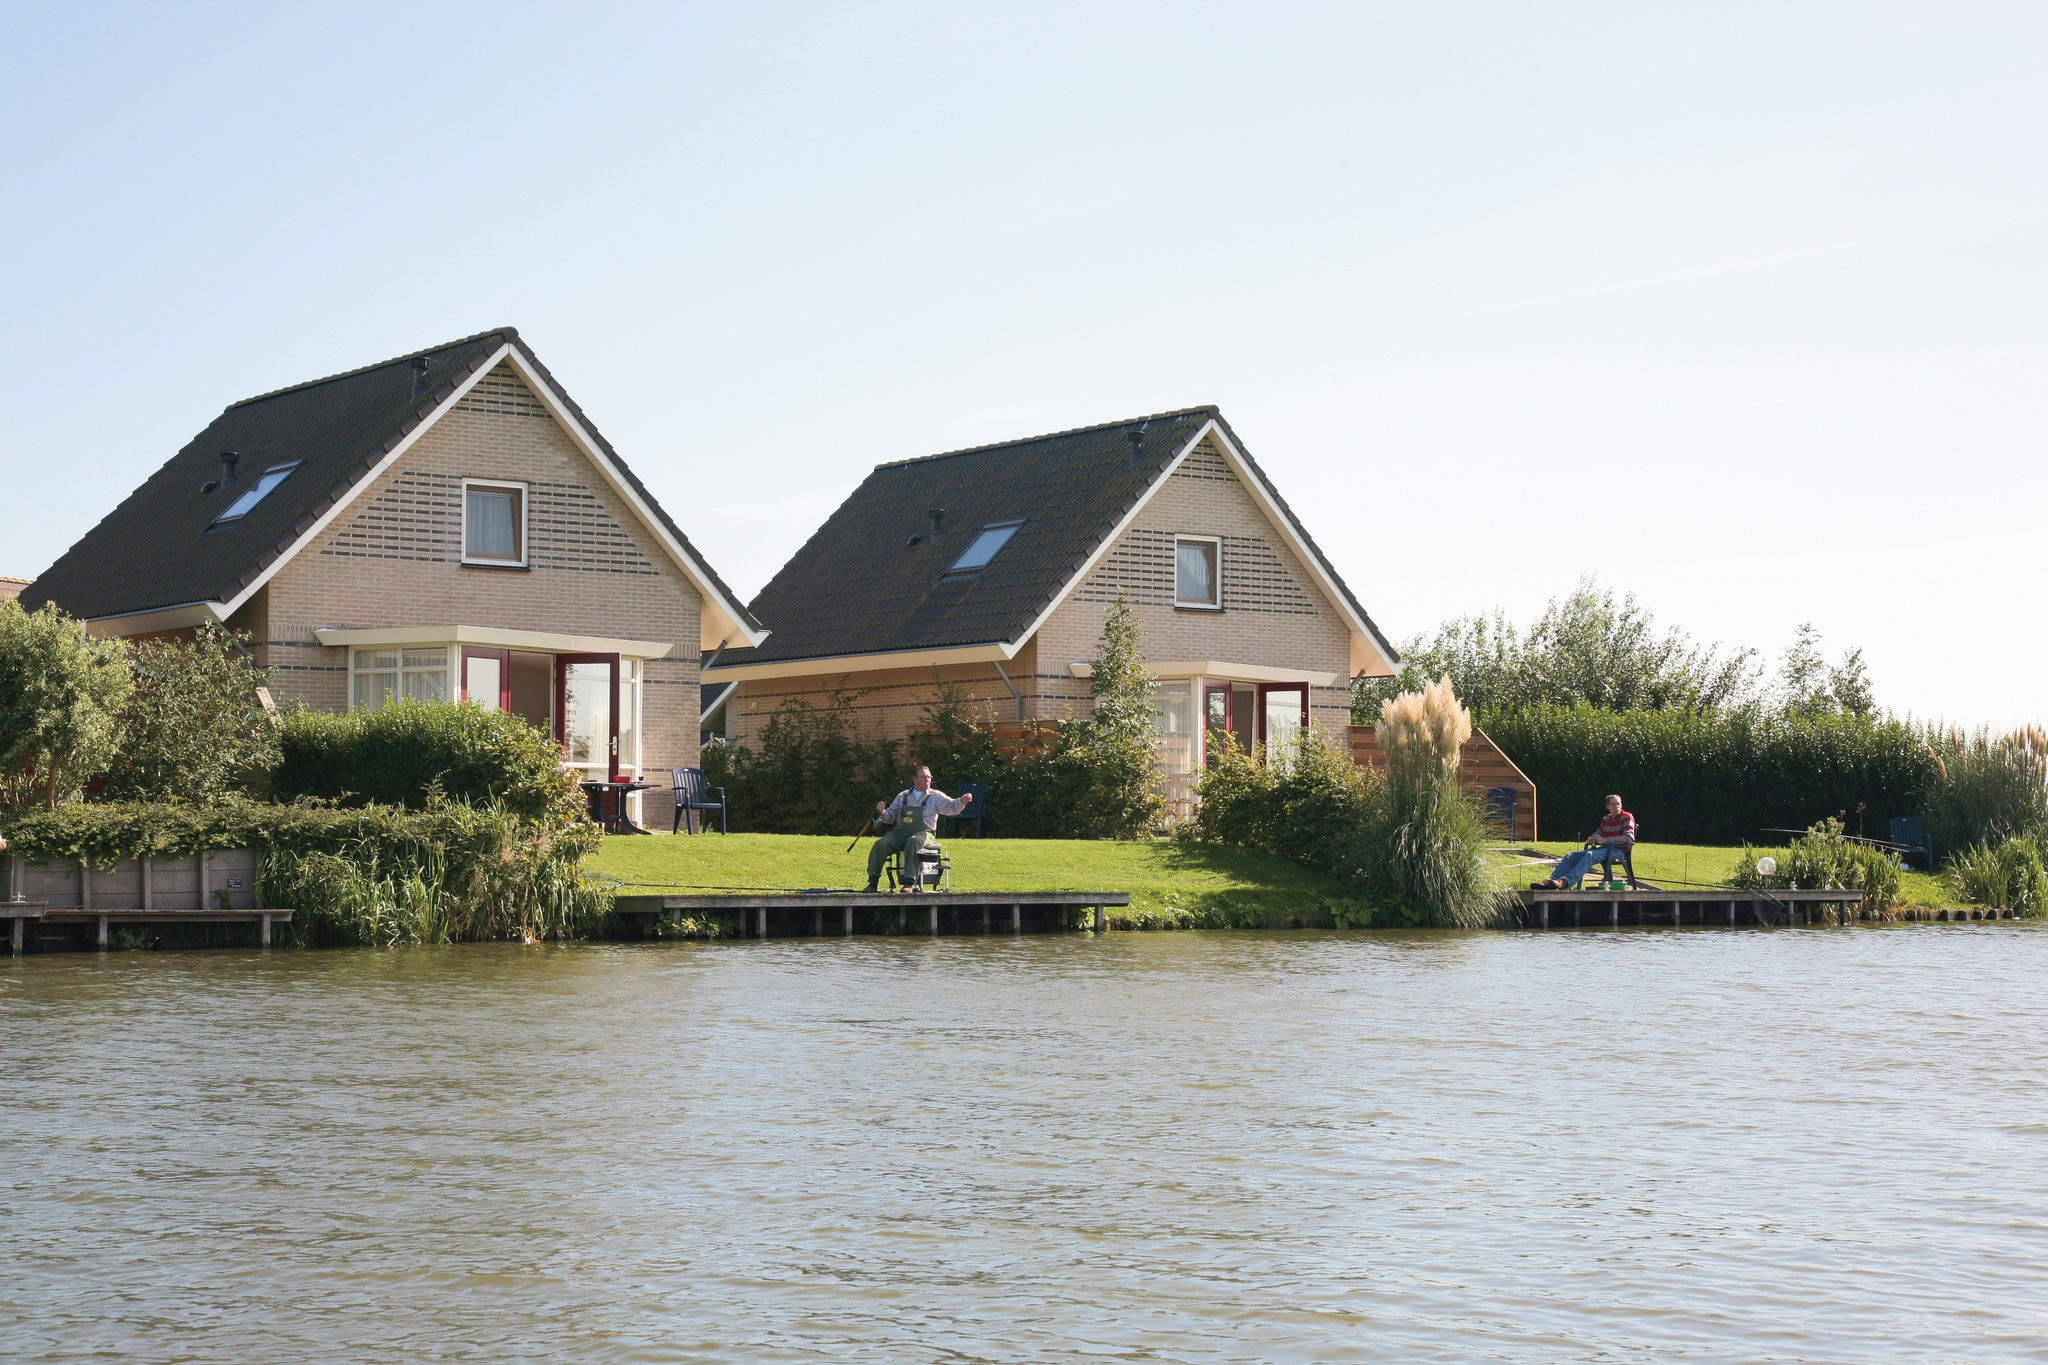 Belle maison avec jetée située près d'IJsselmeer